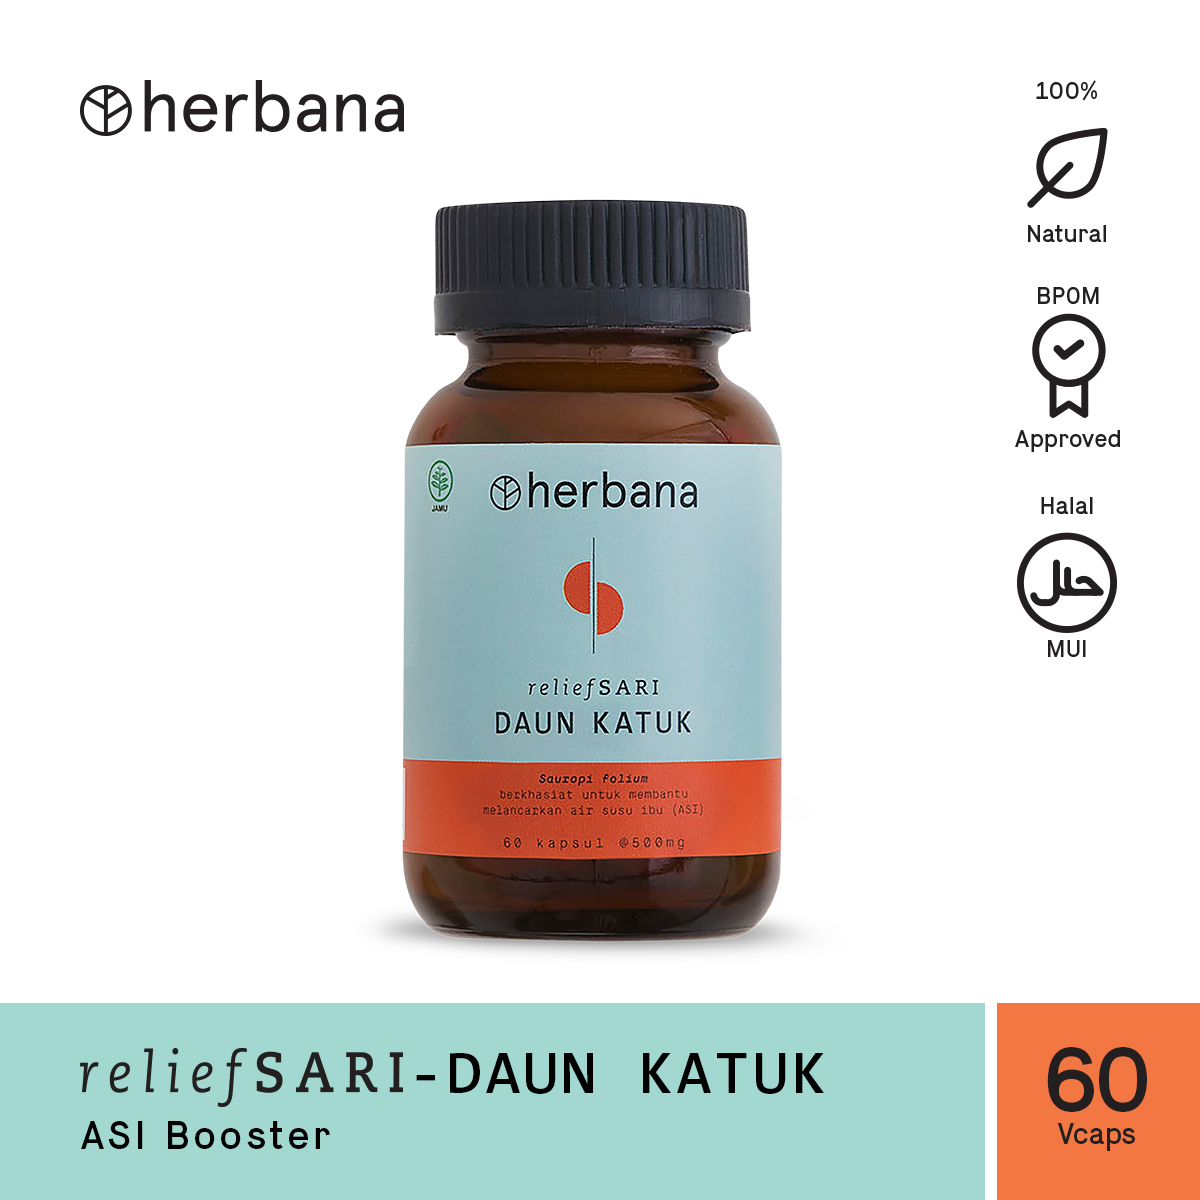 herbana-relief-sari-daun-katuk-60-capsules-76-1615972679.jpg